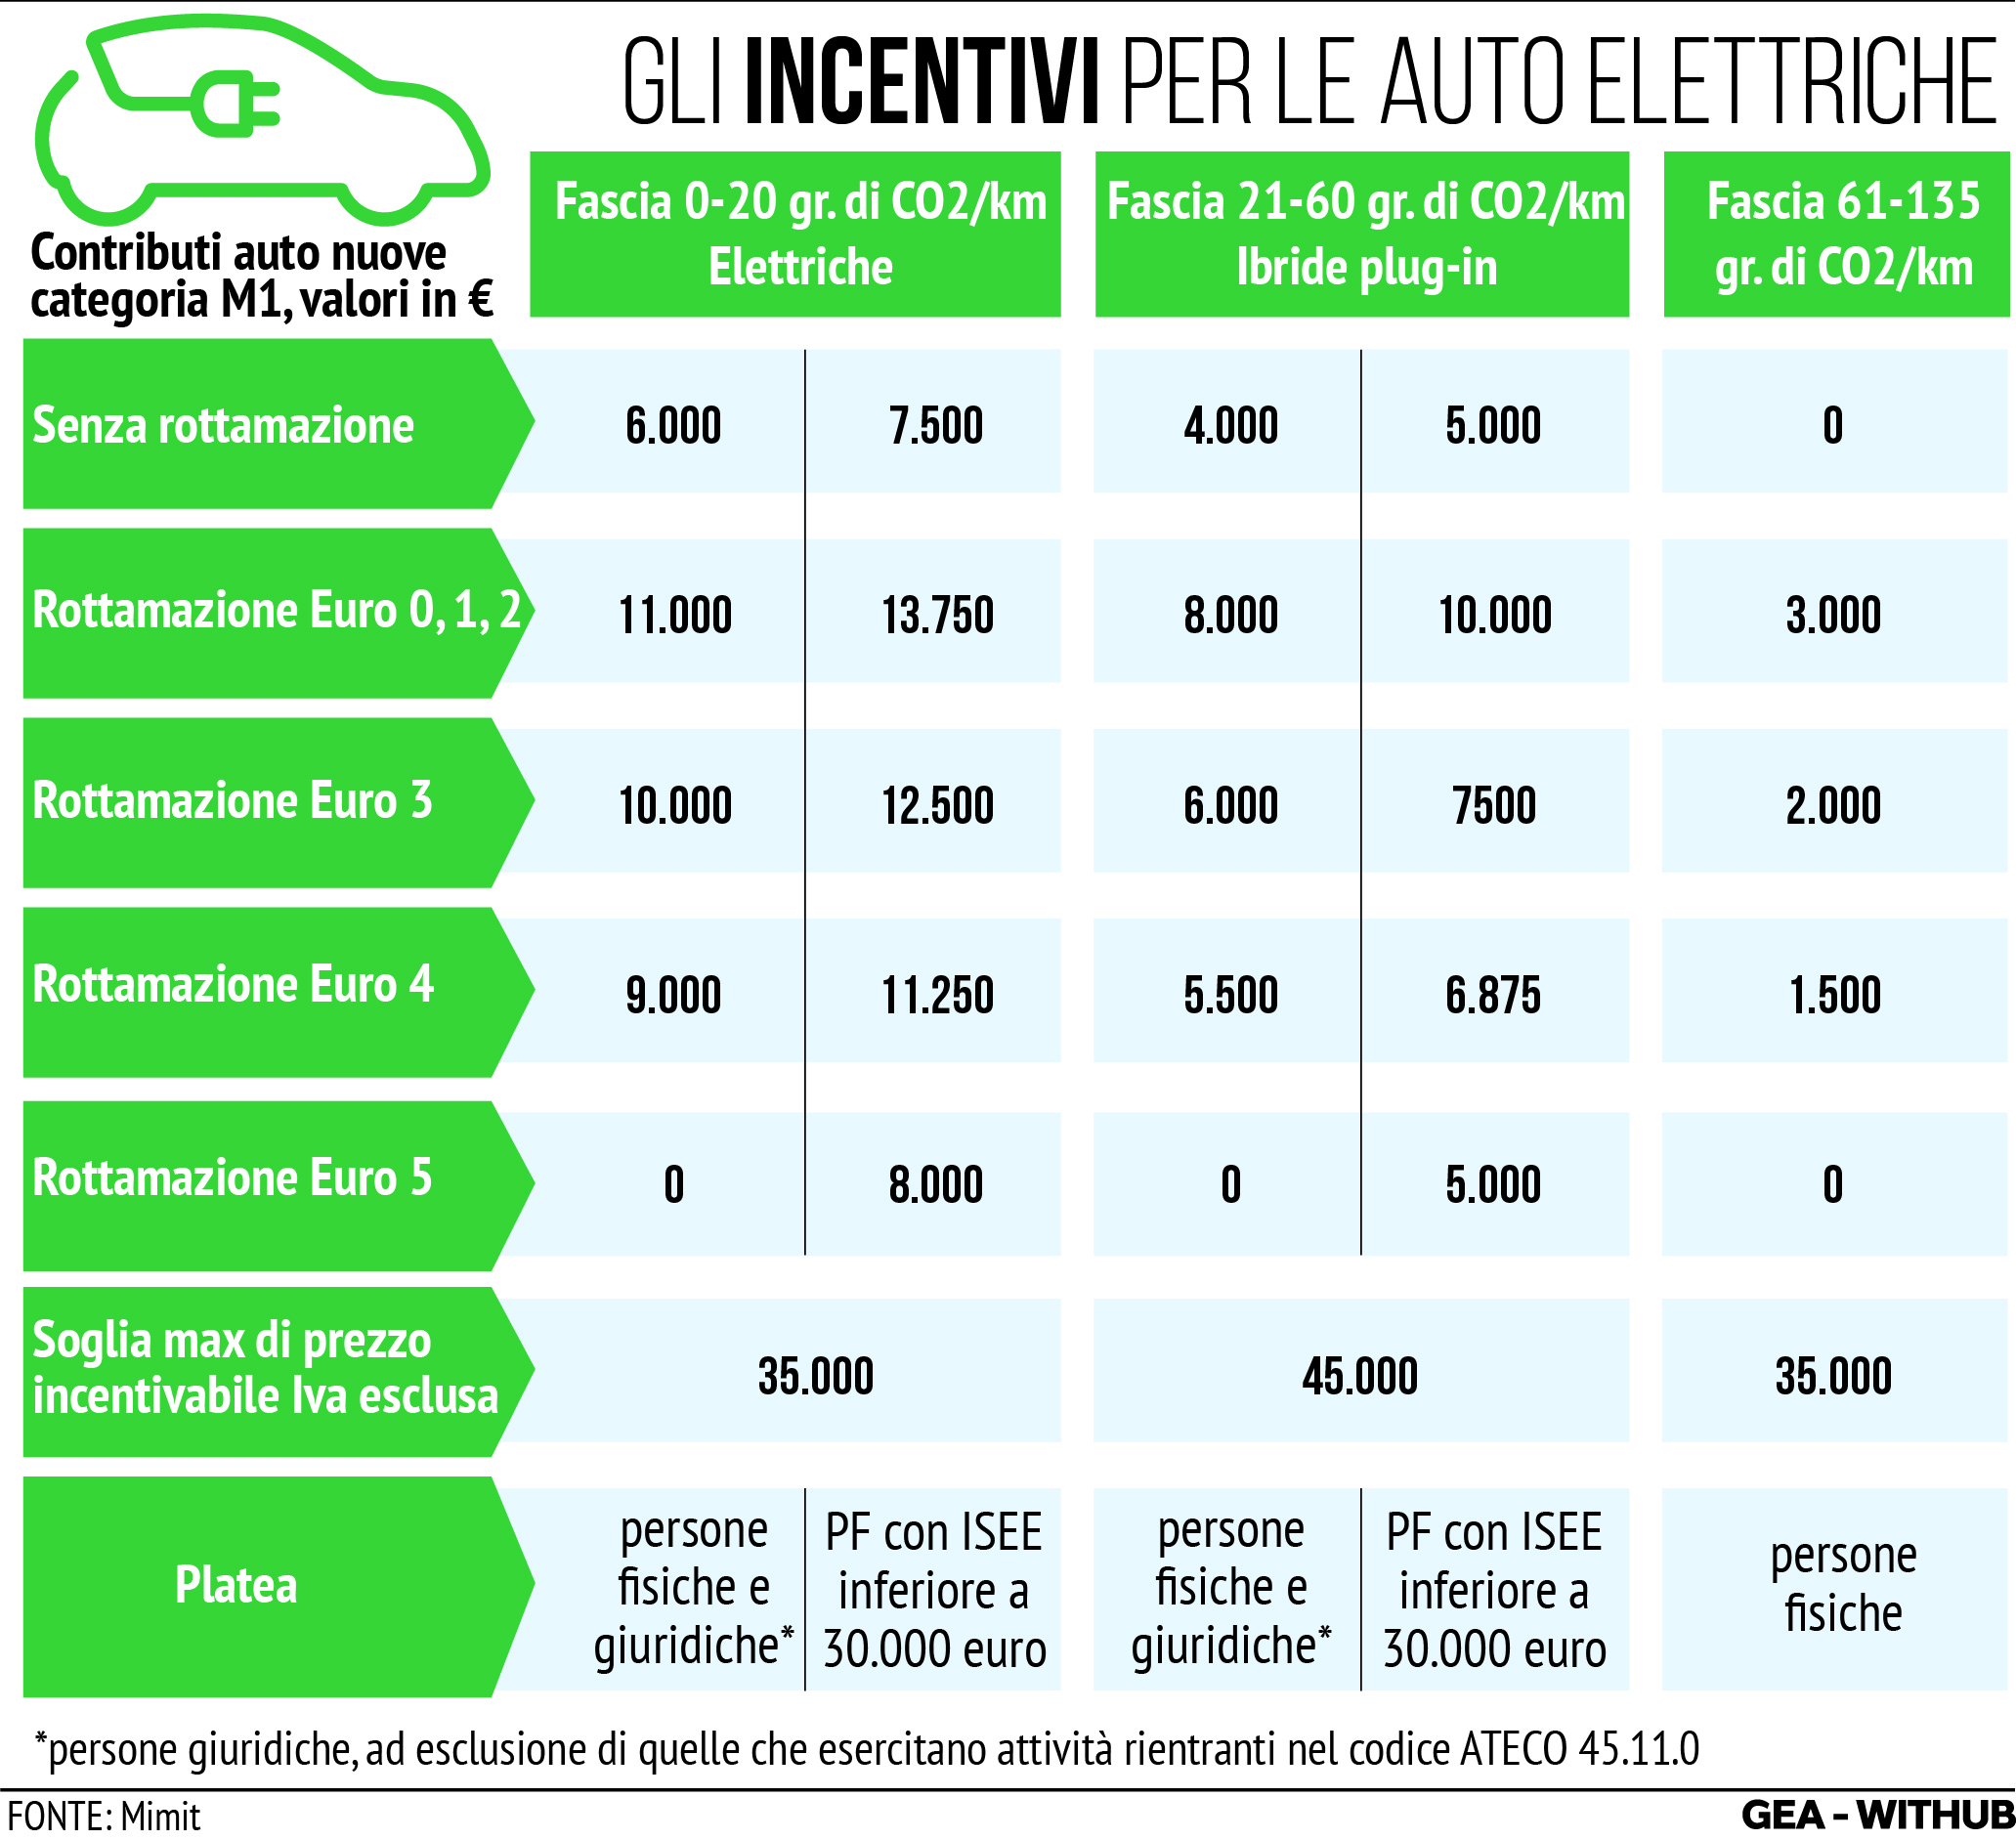 INFOGRAFICA Auto, l'Ecobonus 2024 con incentivi per veicoli elettrici <p>Milano, 03 giu (GEA) - Nell'infografica di GEA, lo schema degli incentivi Ecobonus per l'acquisto di auto elettriche e la rottamazione dei veicoli piÃ¹ inquinanti. La nuova piattaforma per il servizio di prenotazione degli incentivi per lâacquisto di veicoli a basse emissioni inquinanti, Ã¨ attiva da questa mattina. Sul sito, gestito da Invitalia per conto del Mimit, sono disponibili i moduli per chiedere il bonus e le tabelle che, distinte per categorie di veicoli, riportano i criteri di attribuzione dei contributi. Per l'Ecobonus 2024, misura promossa dal Ministero delle Imprese e del Made in Italy, sono disponibili risorse pari a 950 milioni di euro a cui si aggiungono 50 milioni per i veicoli L per lâanno in corso.</p> <p>AFT/VLN</p>